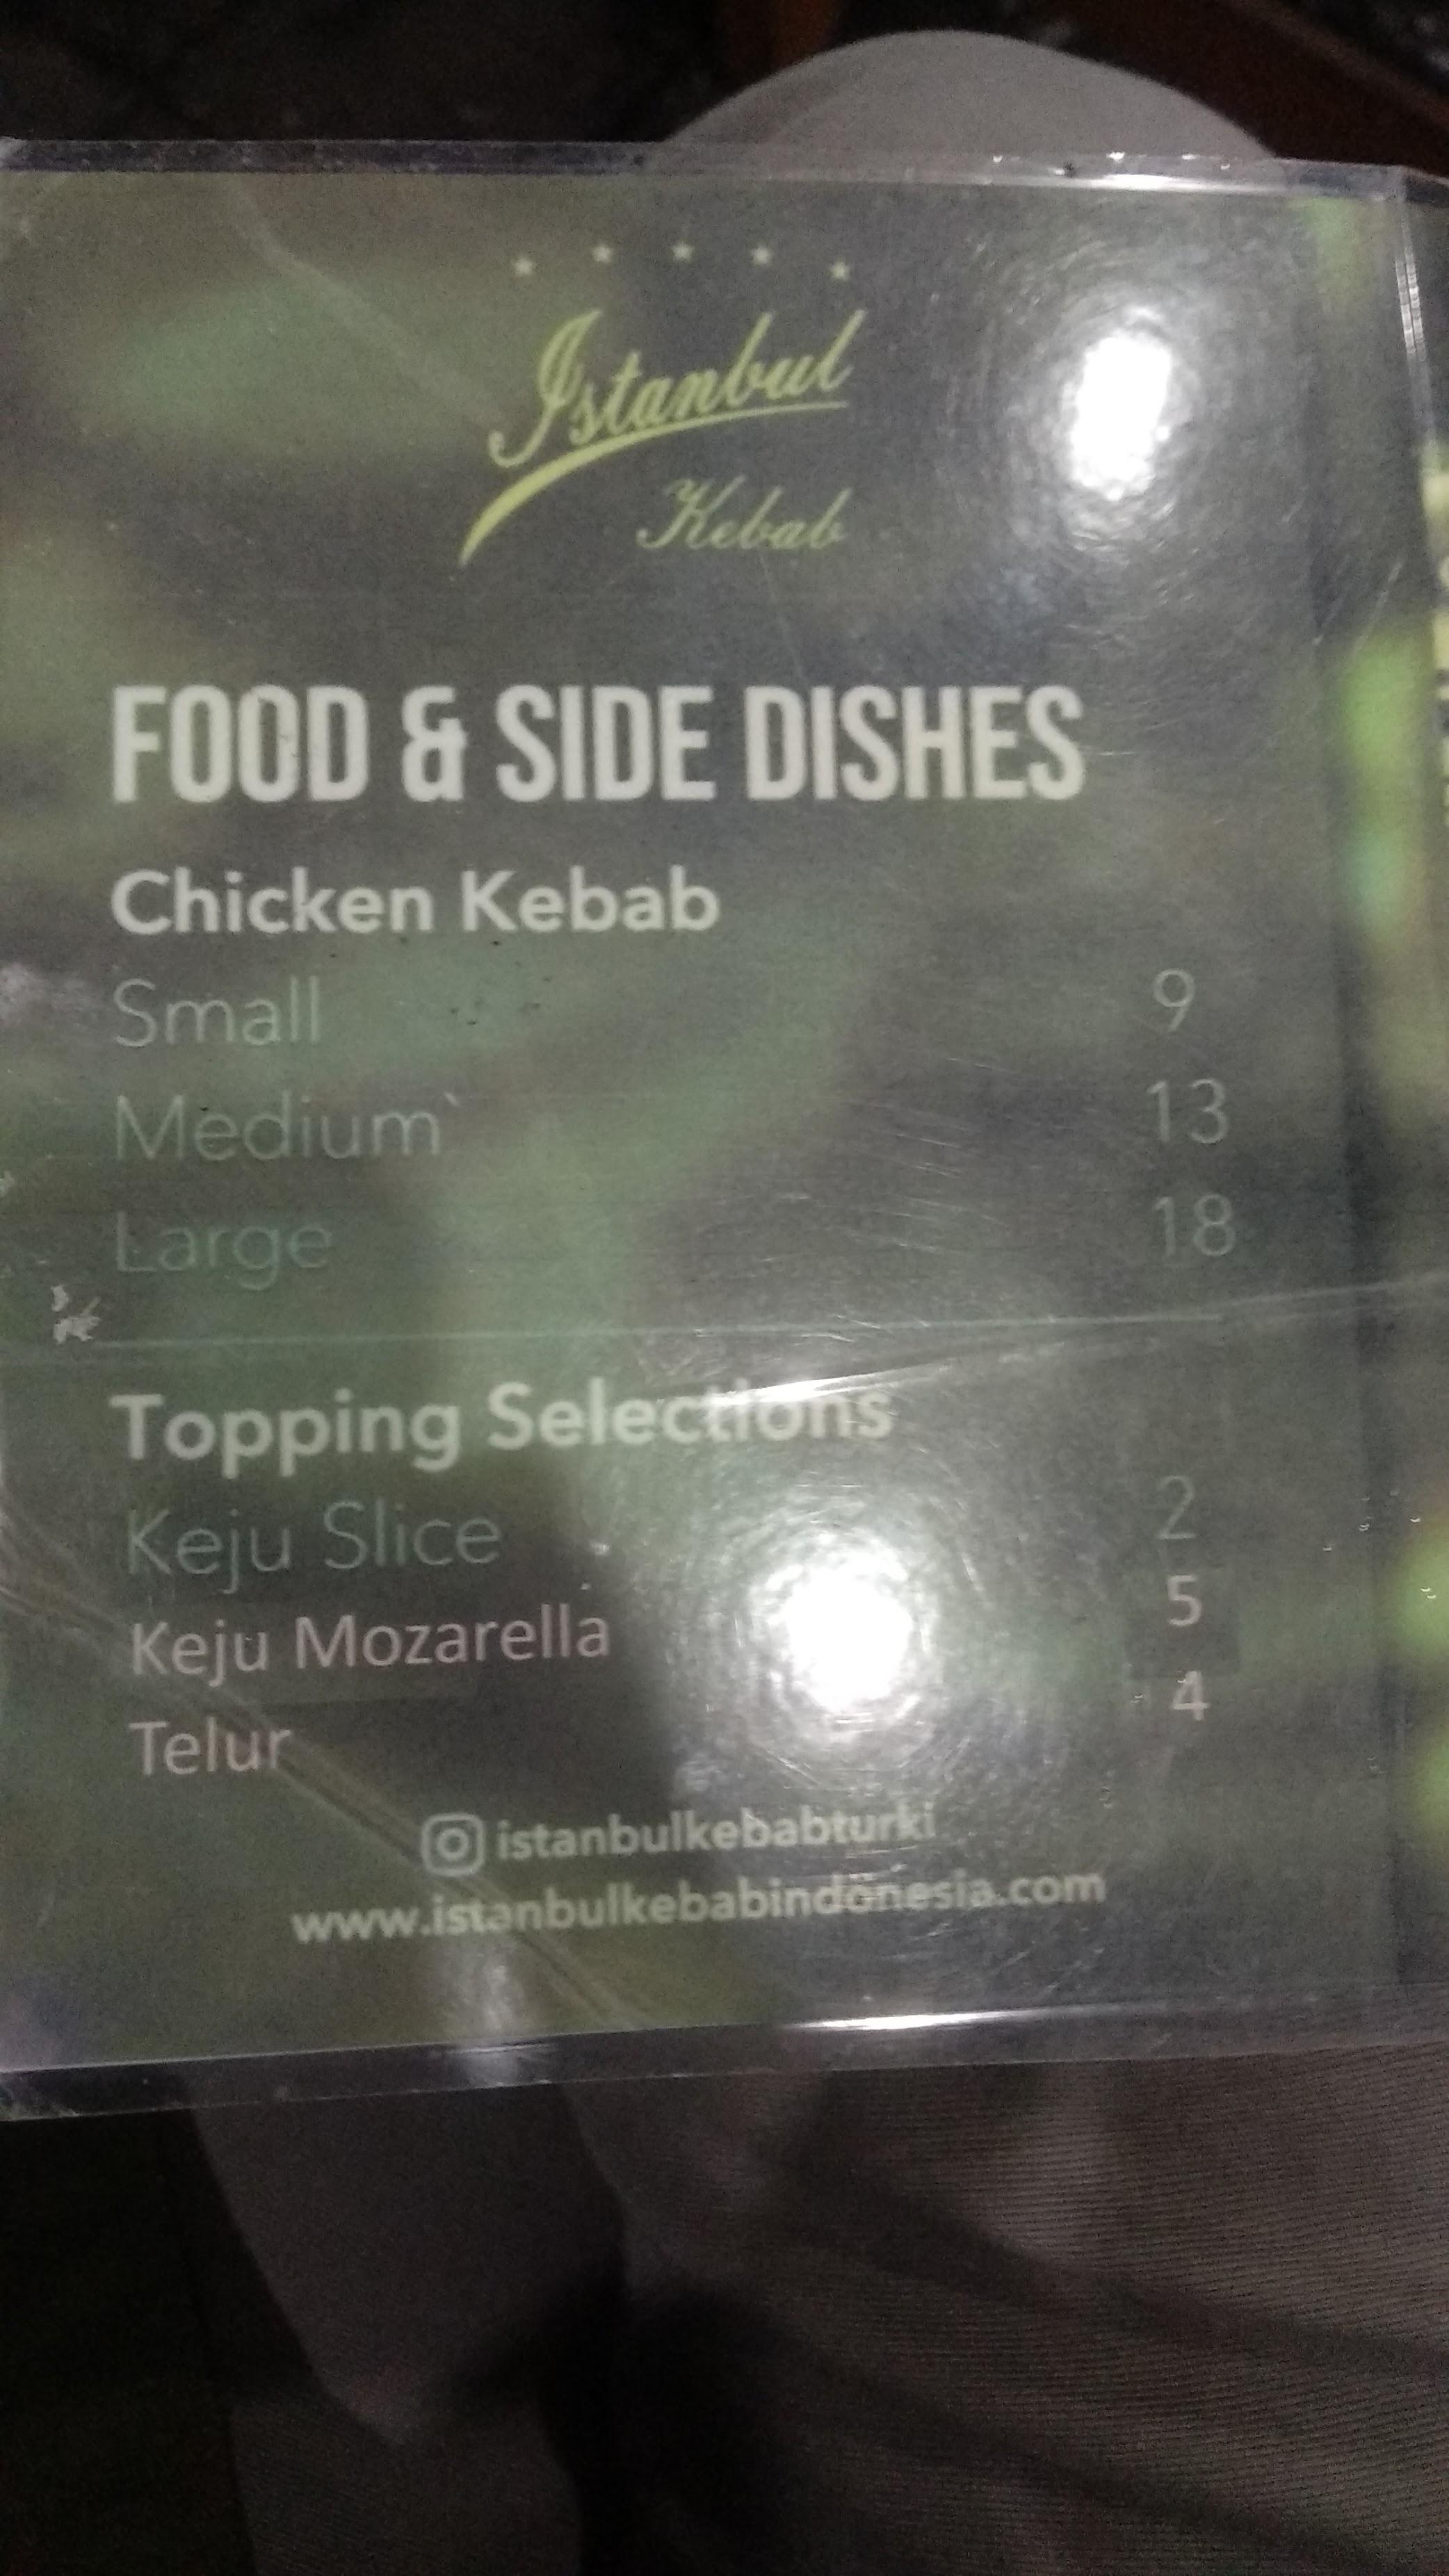 Istanbul Kebab review